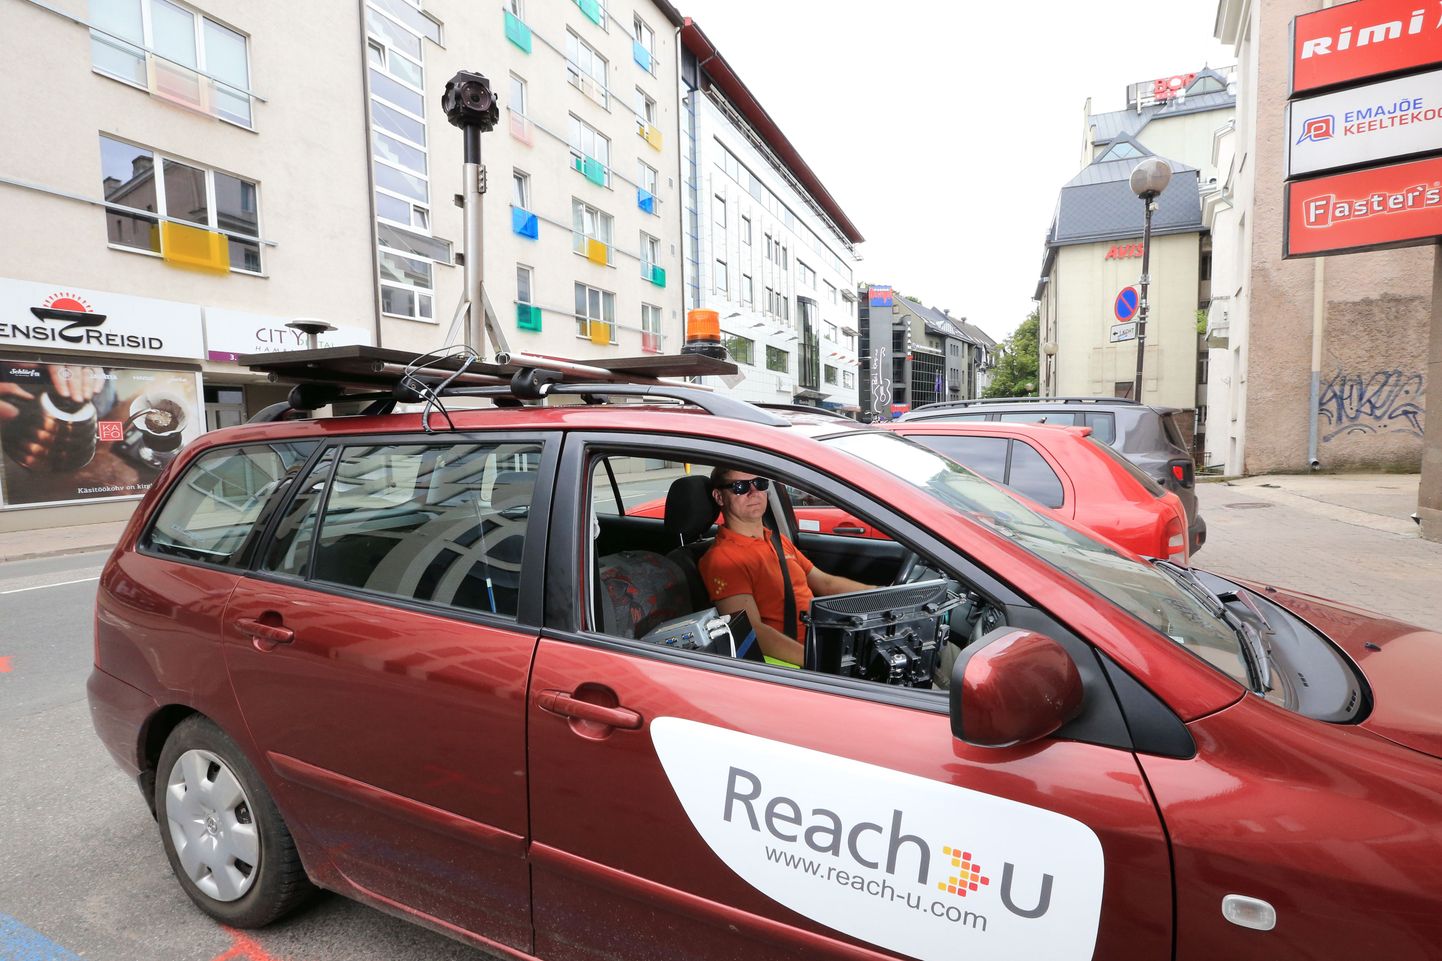 Eestis võib näha ringi liikumas tumepunast Reach-U välitööde autot.